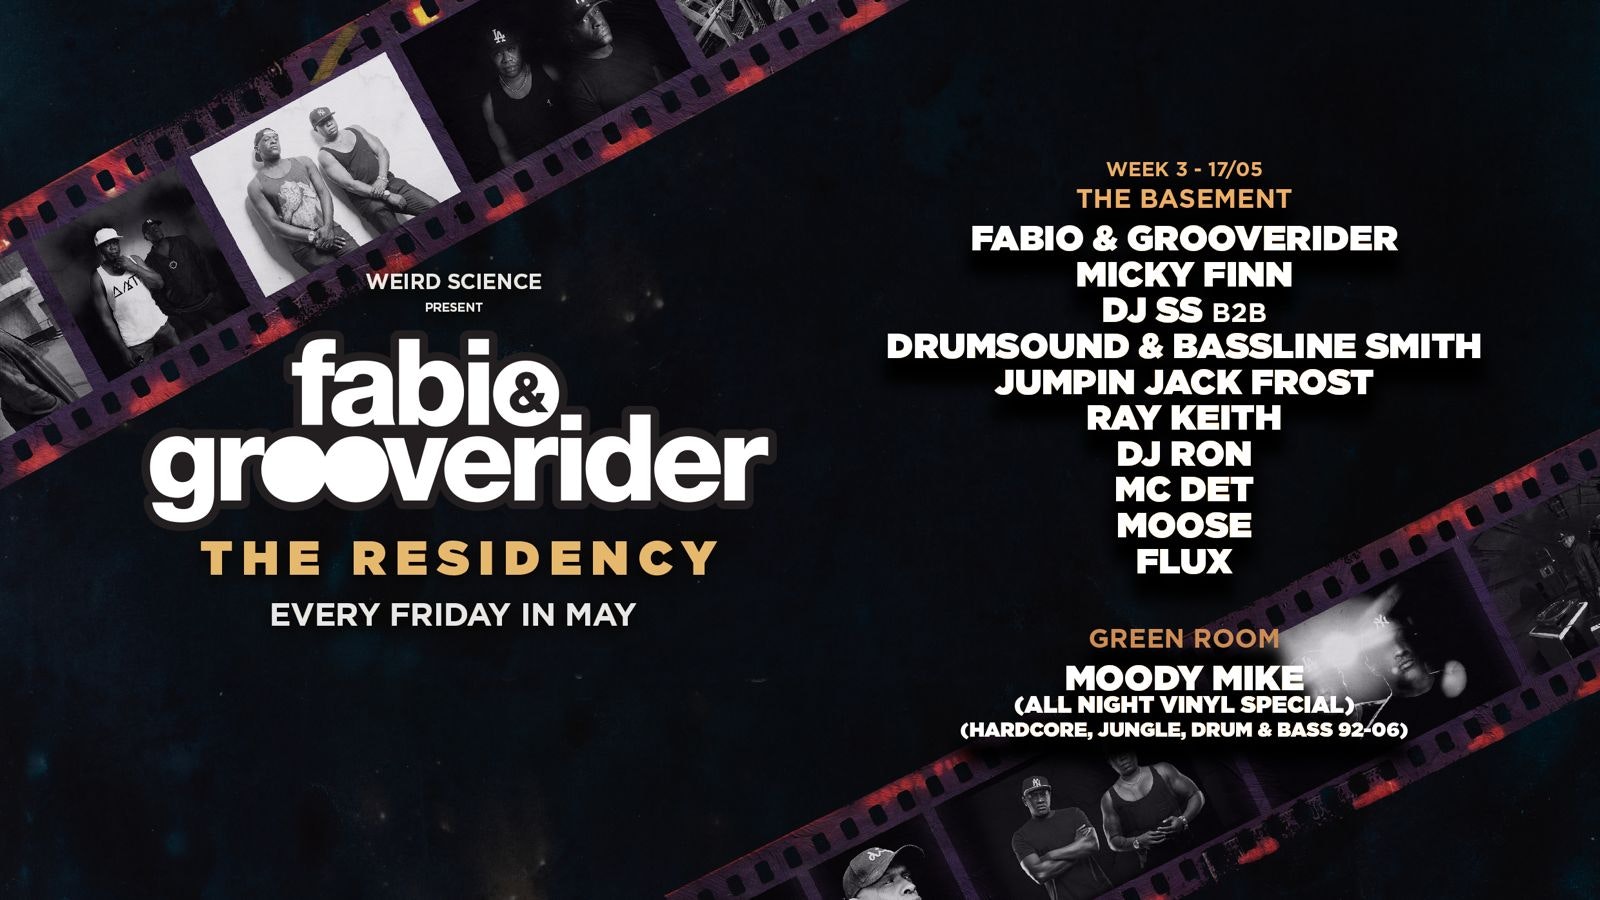 Fabio & Grooverider : The Residency (Week 3)